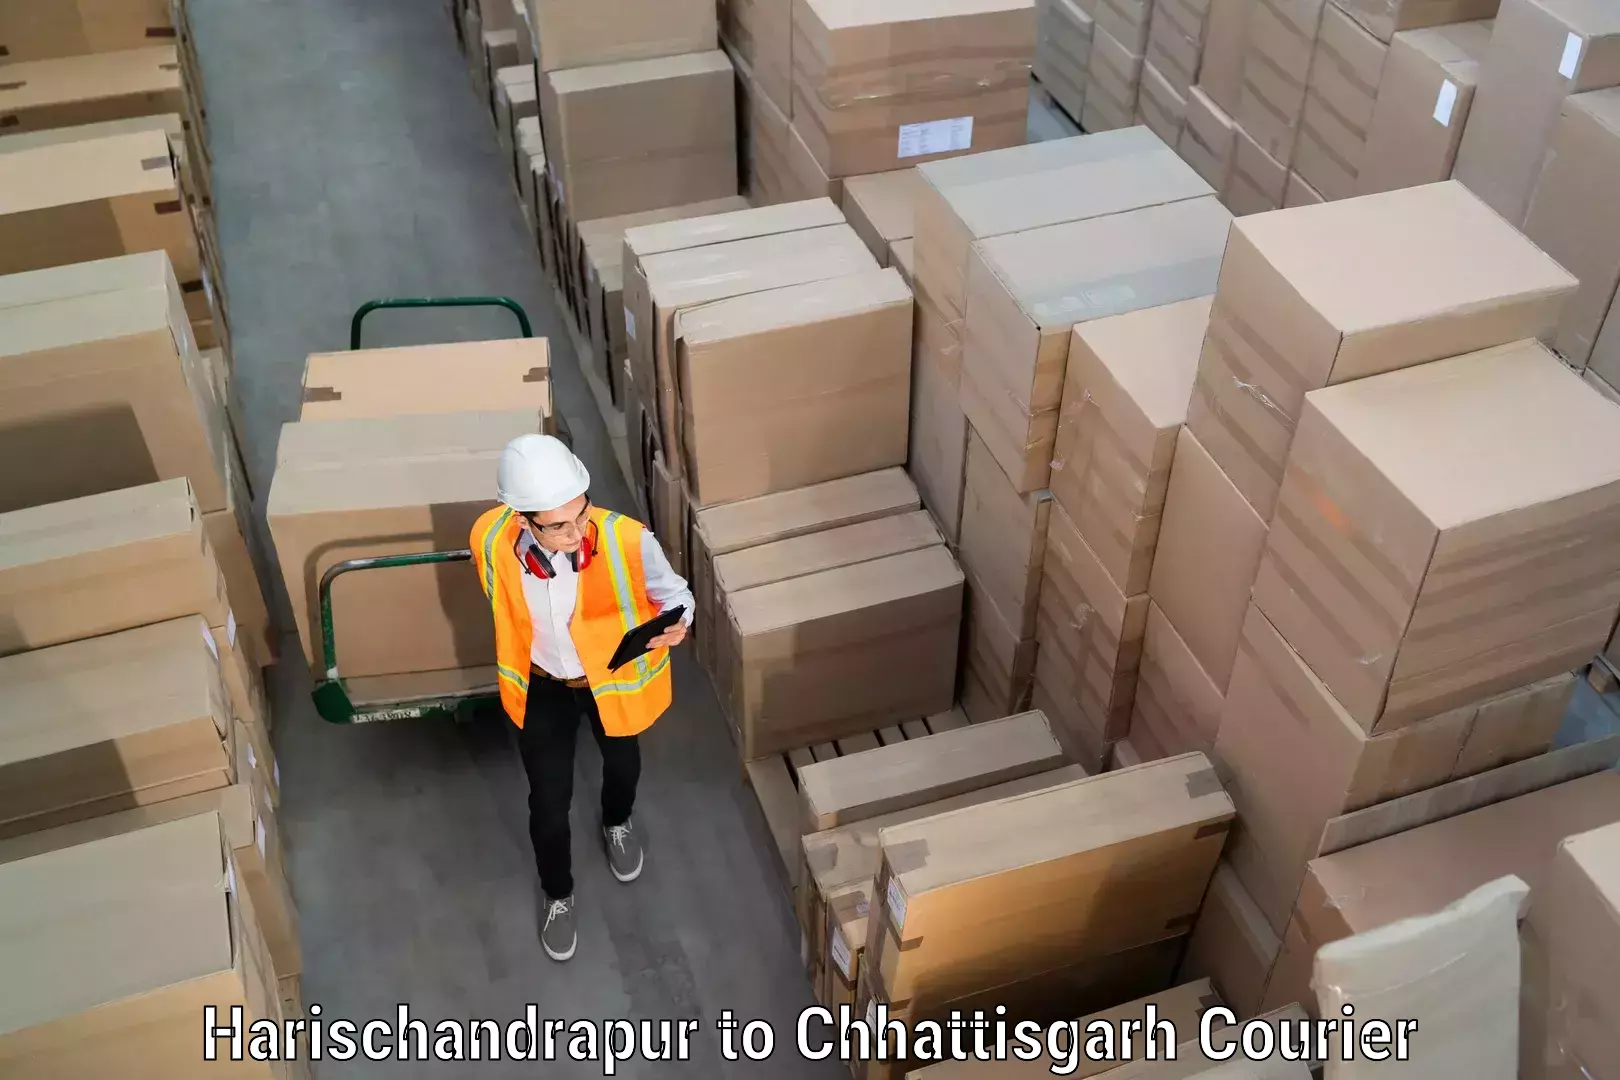 Furniture transport specialists Harischandrapur to Chhattisgarh